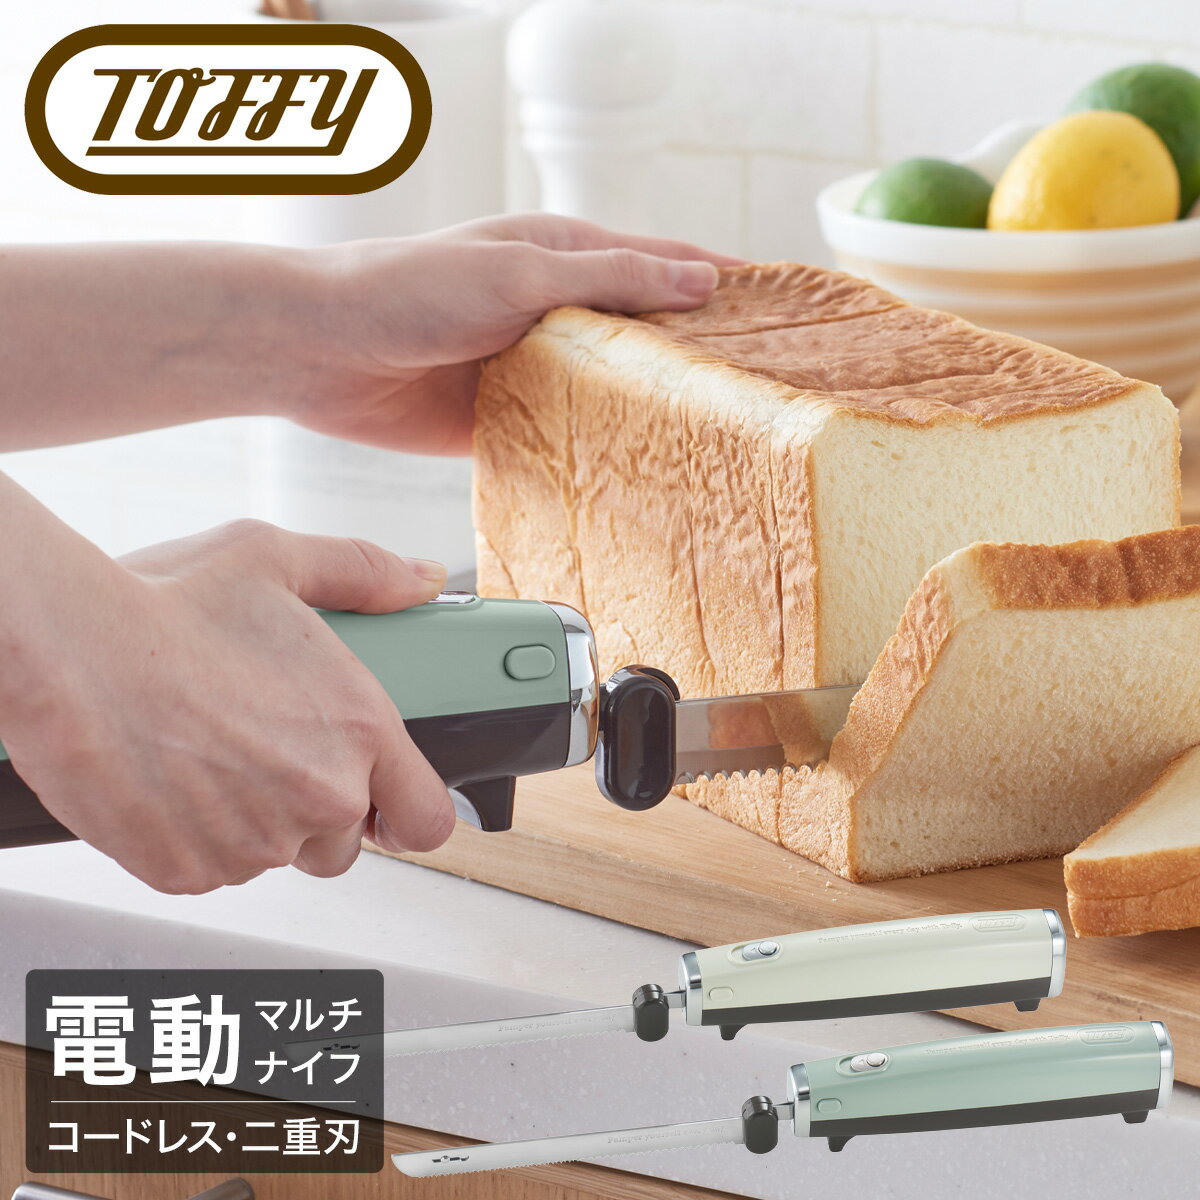 新款 日本公司貨 Toffy K-EK1 電動 麵包刀 USB充電式 電動吐司刀 土司刀 料理刀 切片刀 附刀片收納套